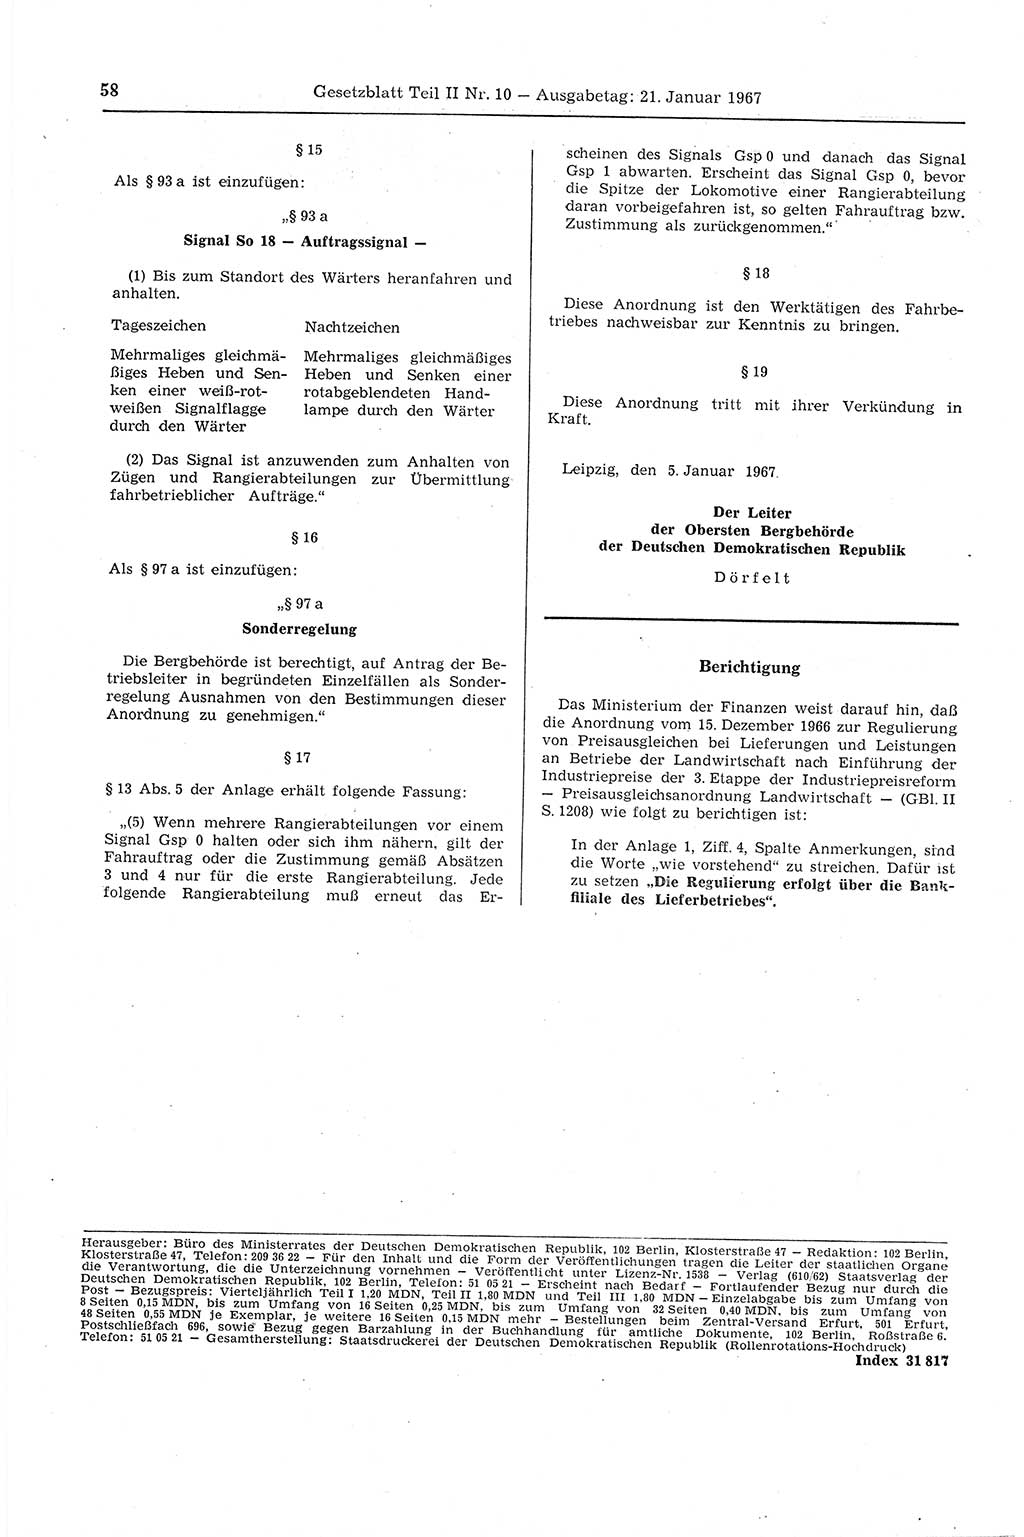 Gesetzblatt (GBl.) der Deutschen Demokratischen Republik (DDR) Teil ⅠⅠ 1967, Seite 58 (GBl. DDR ⅠⅠ 1967, S. 58)